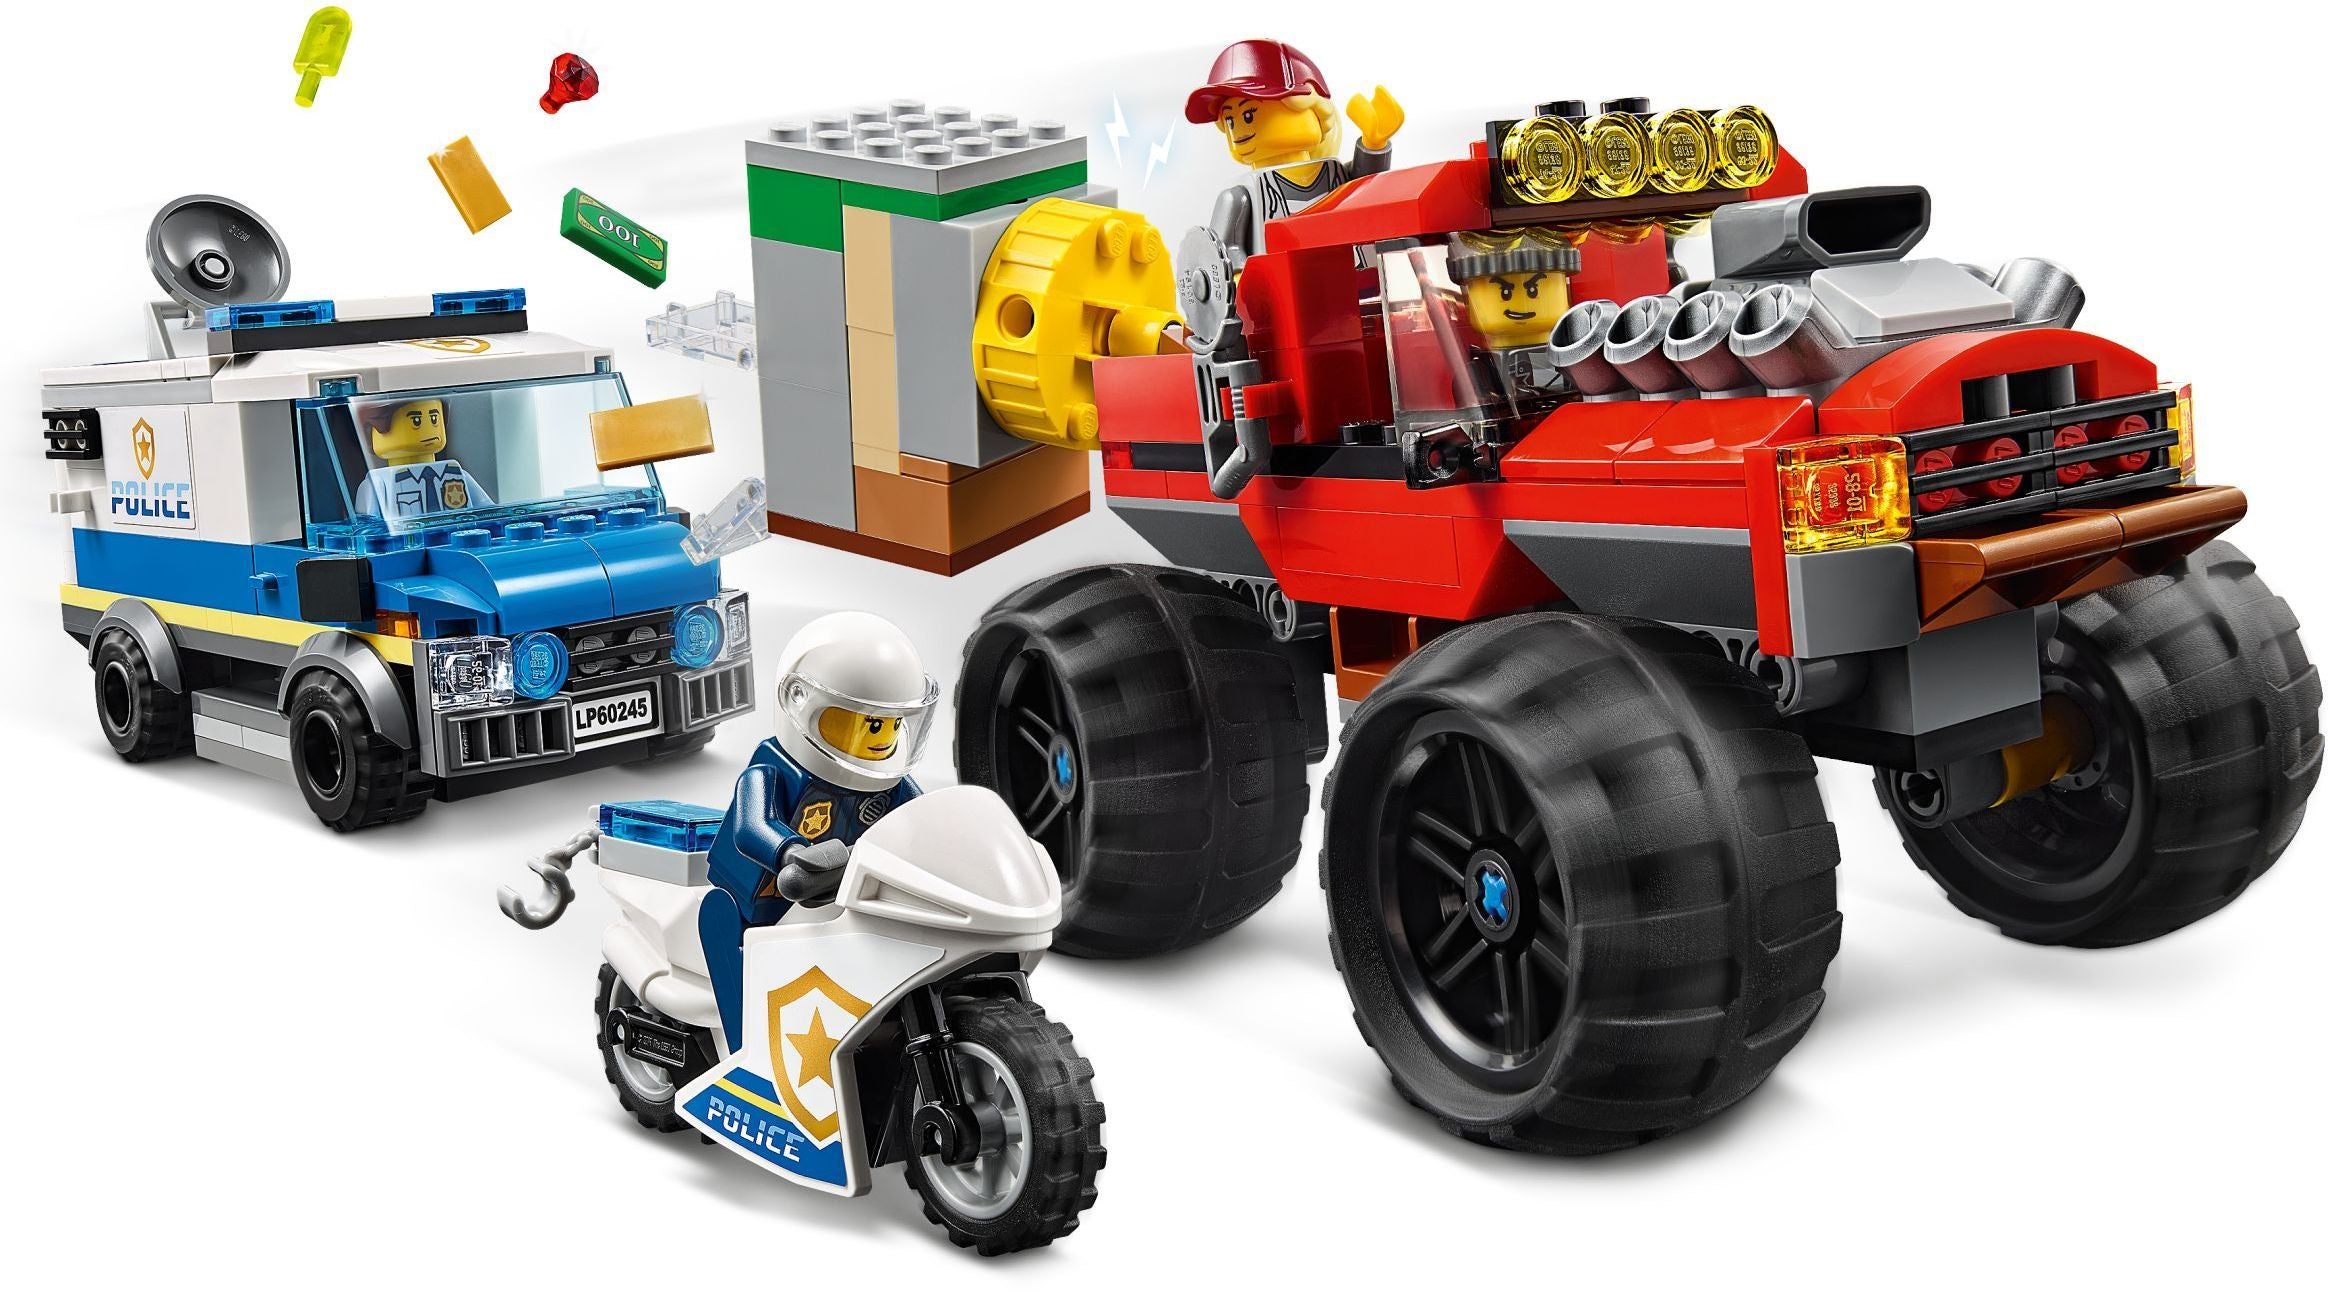 LEGO 60245 Police Monster Truck Heist